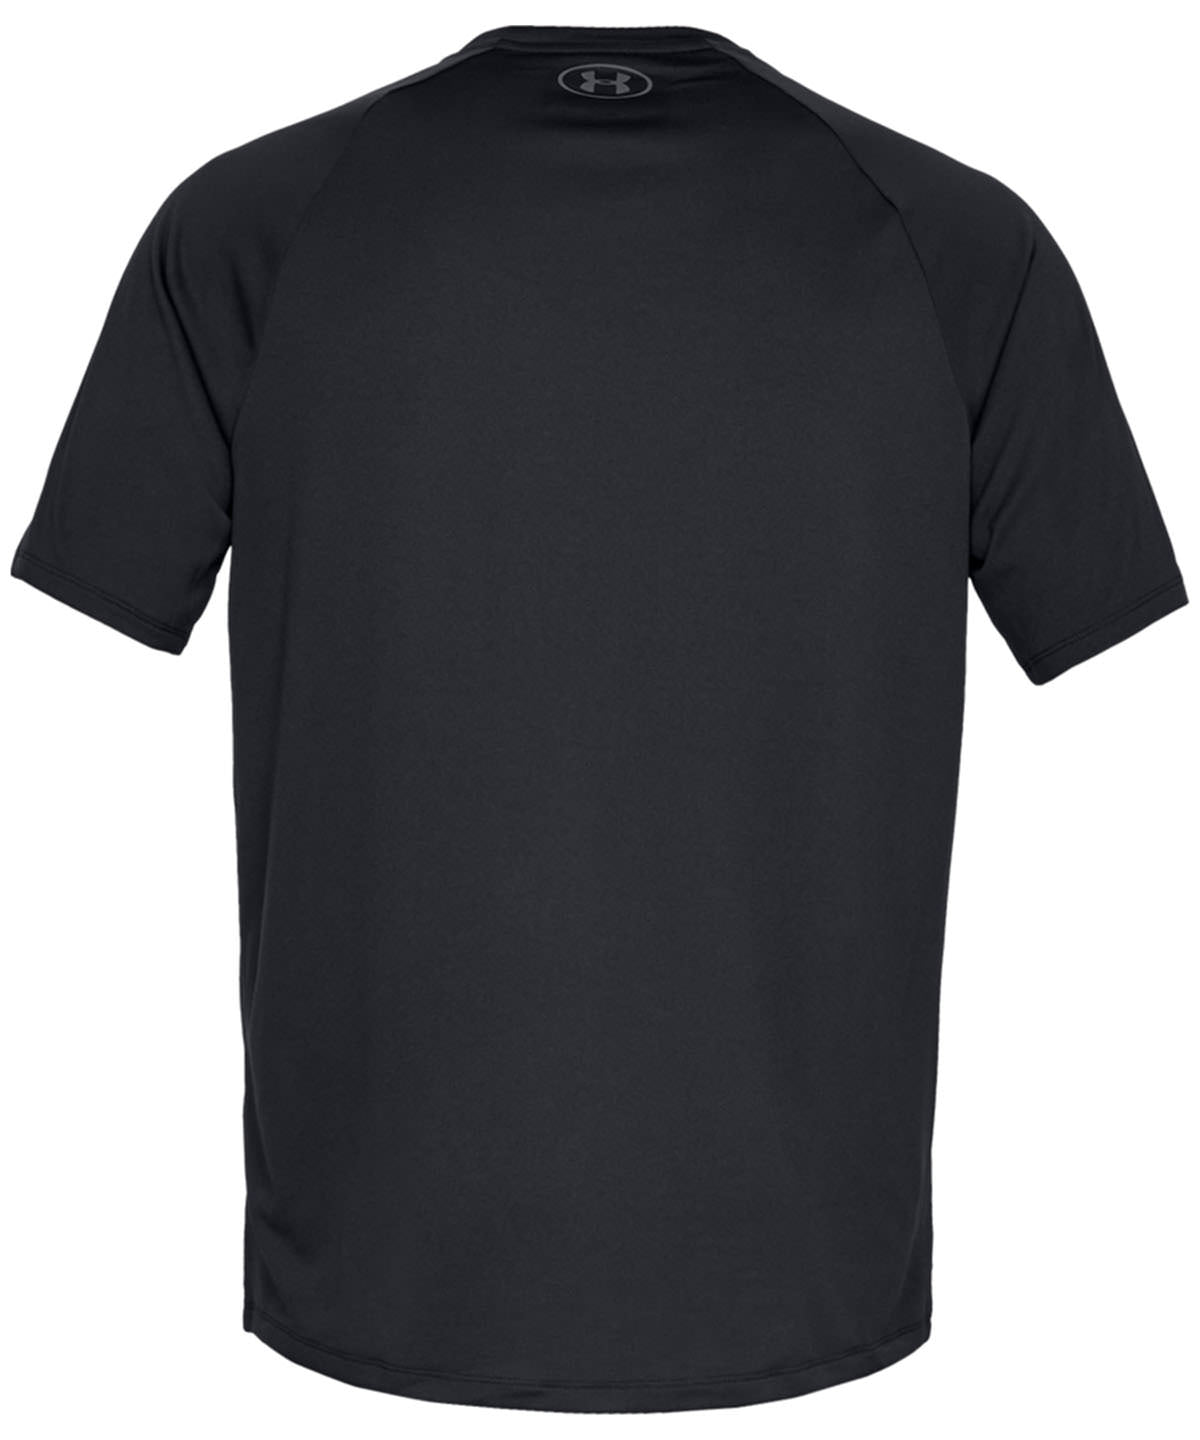 Under Armour Tech™ short sleeve Gym T shirt